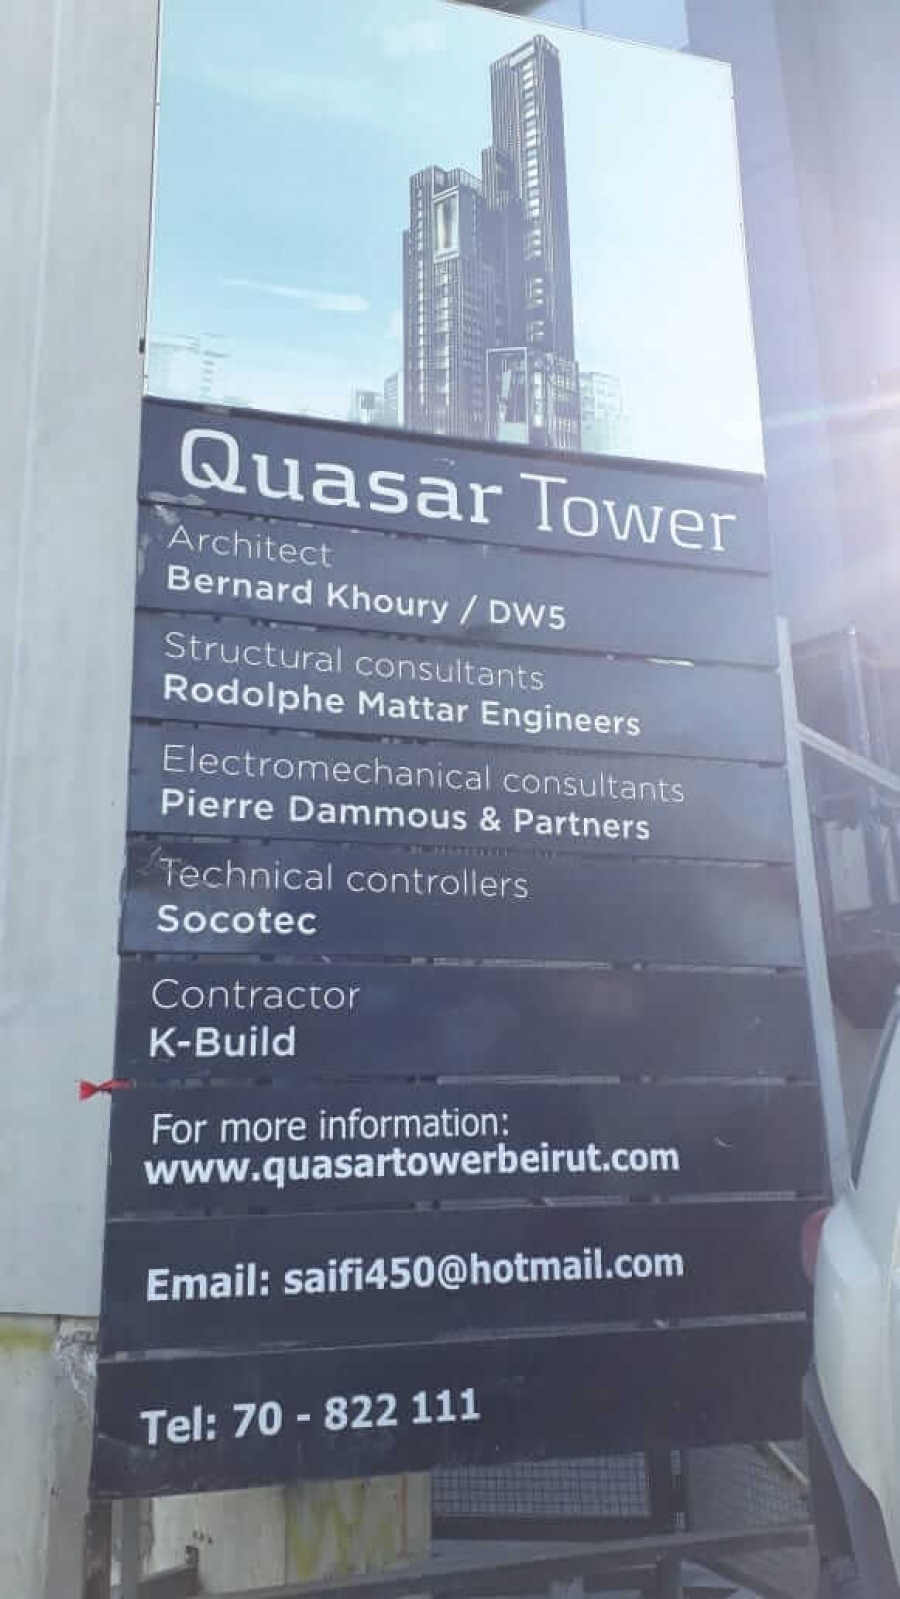 Quasar Tower